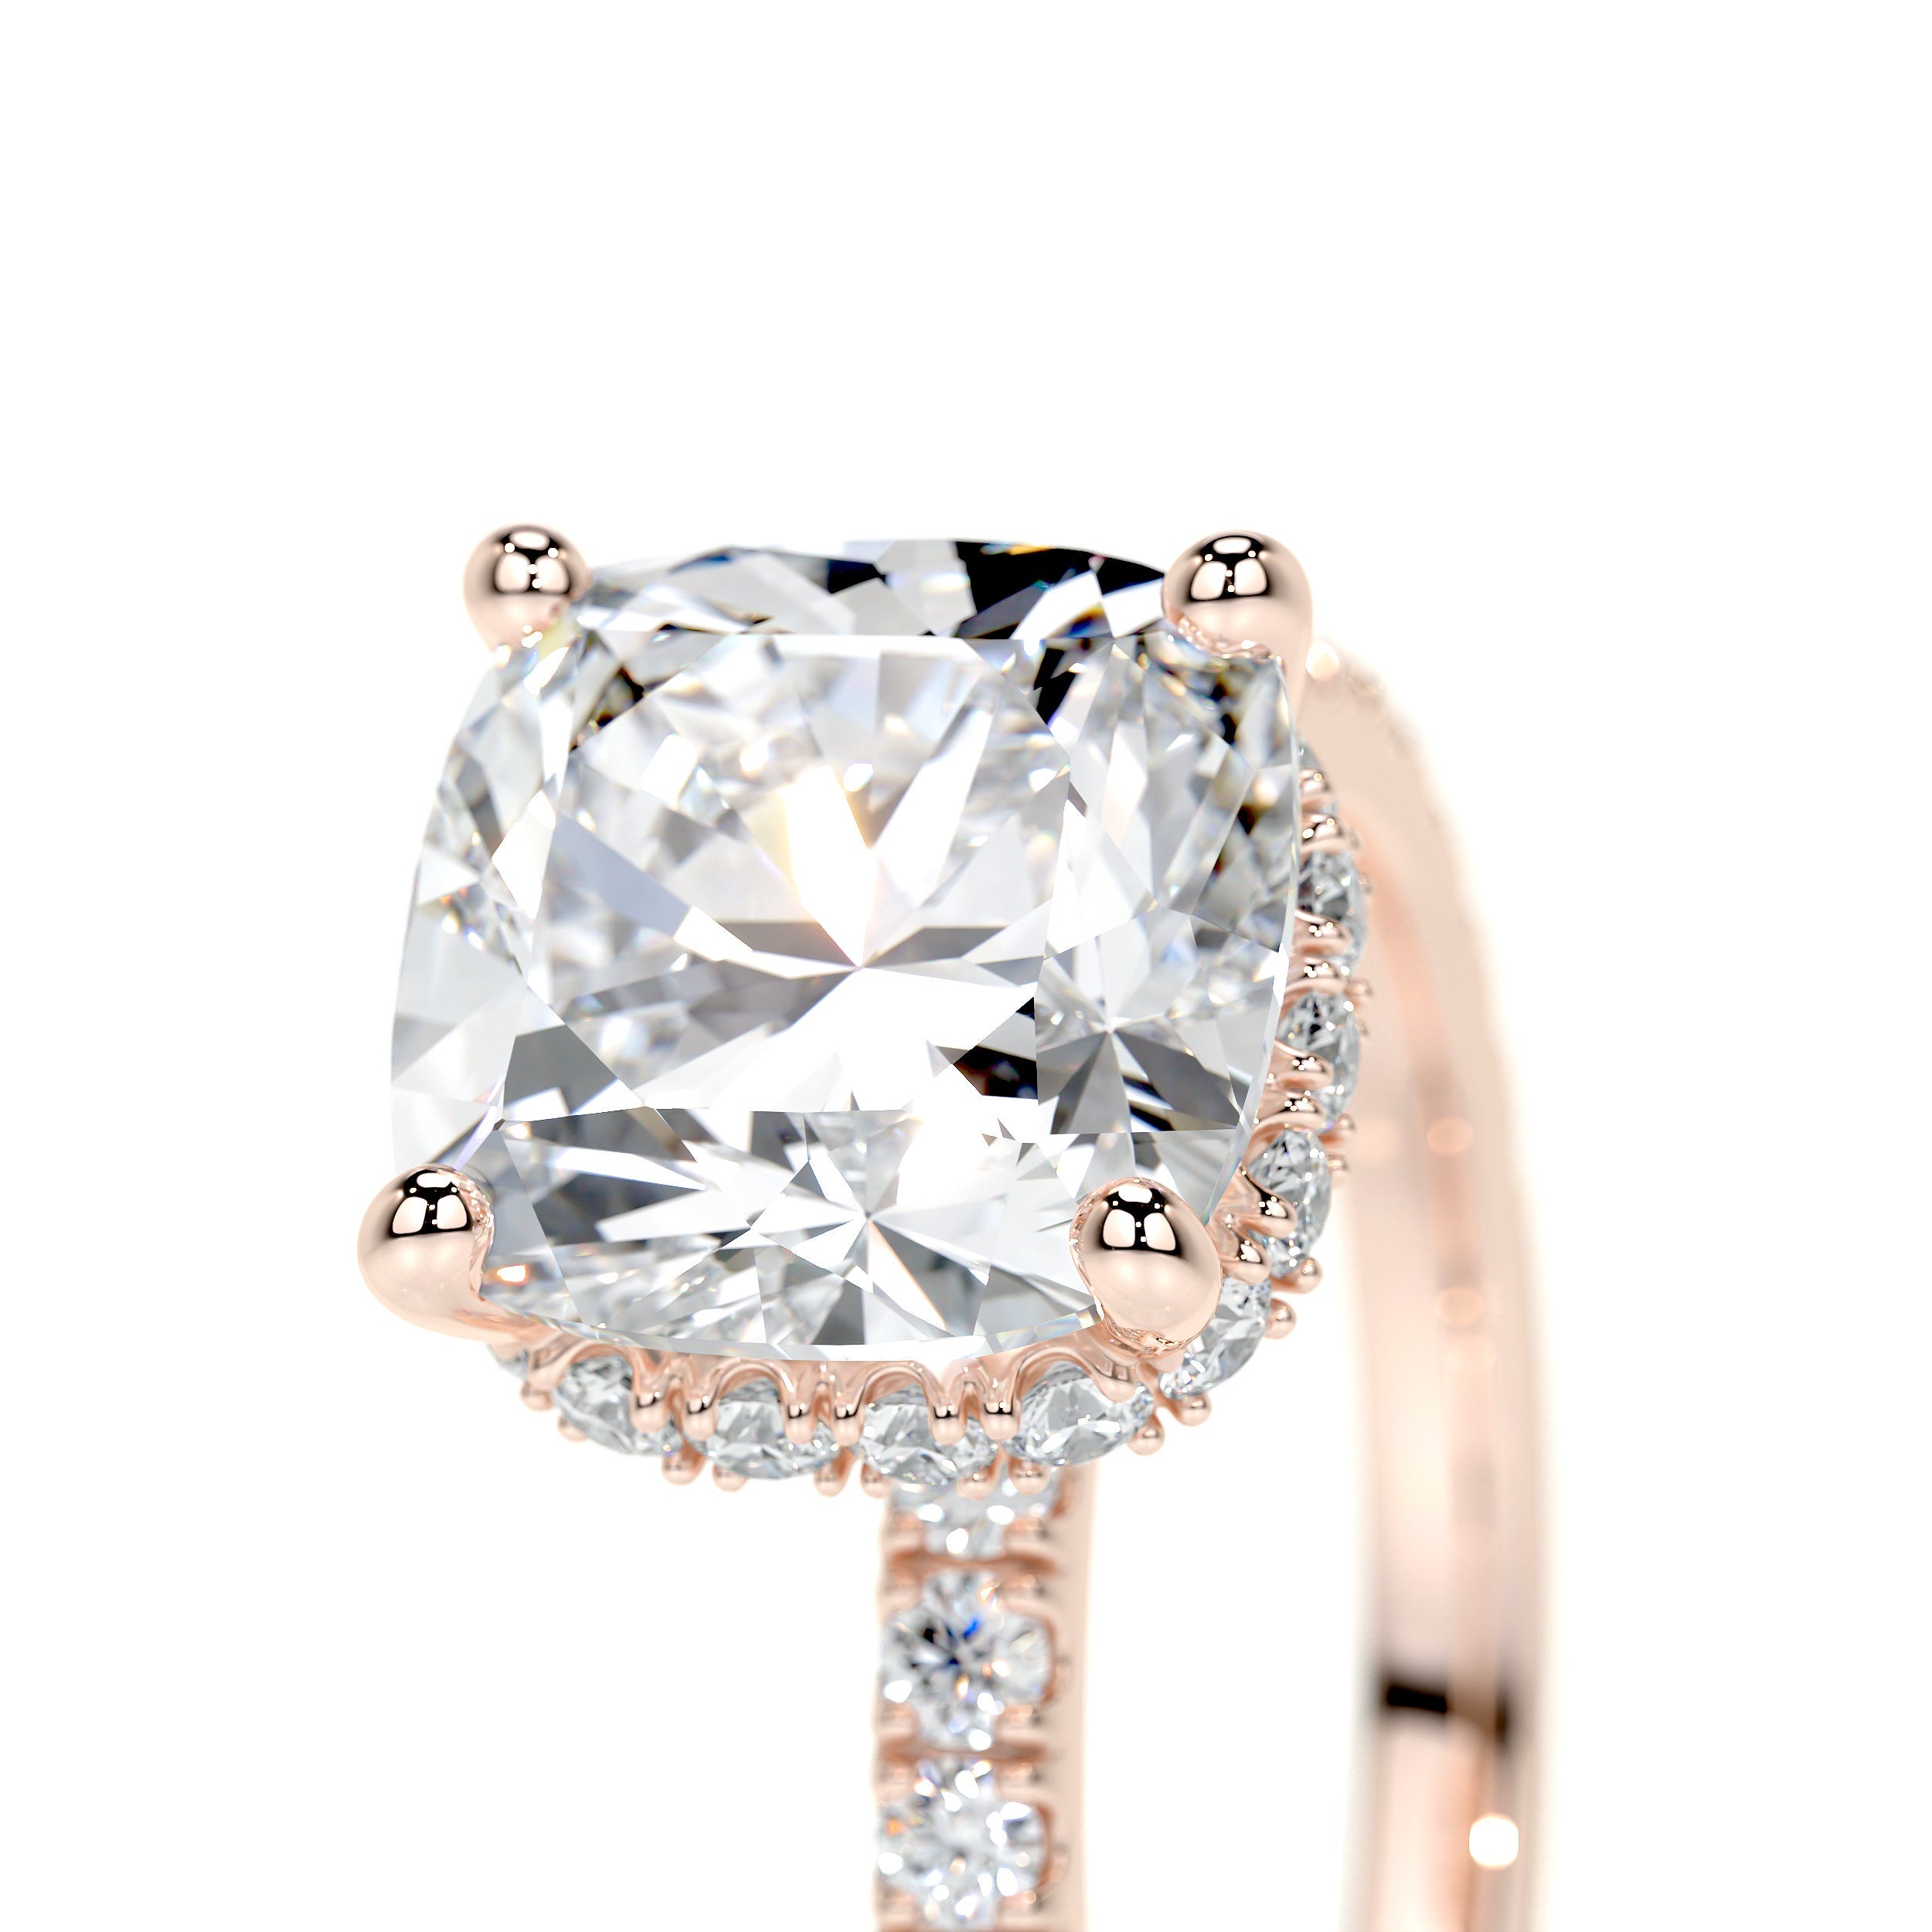 Madeline Lab Grown Diamond Ring   (2.5 Carat) -14K Rose Gold